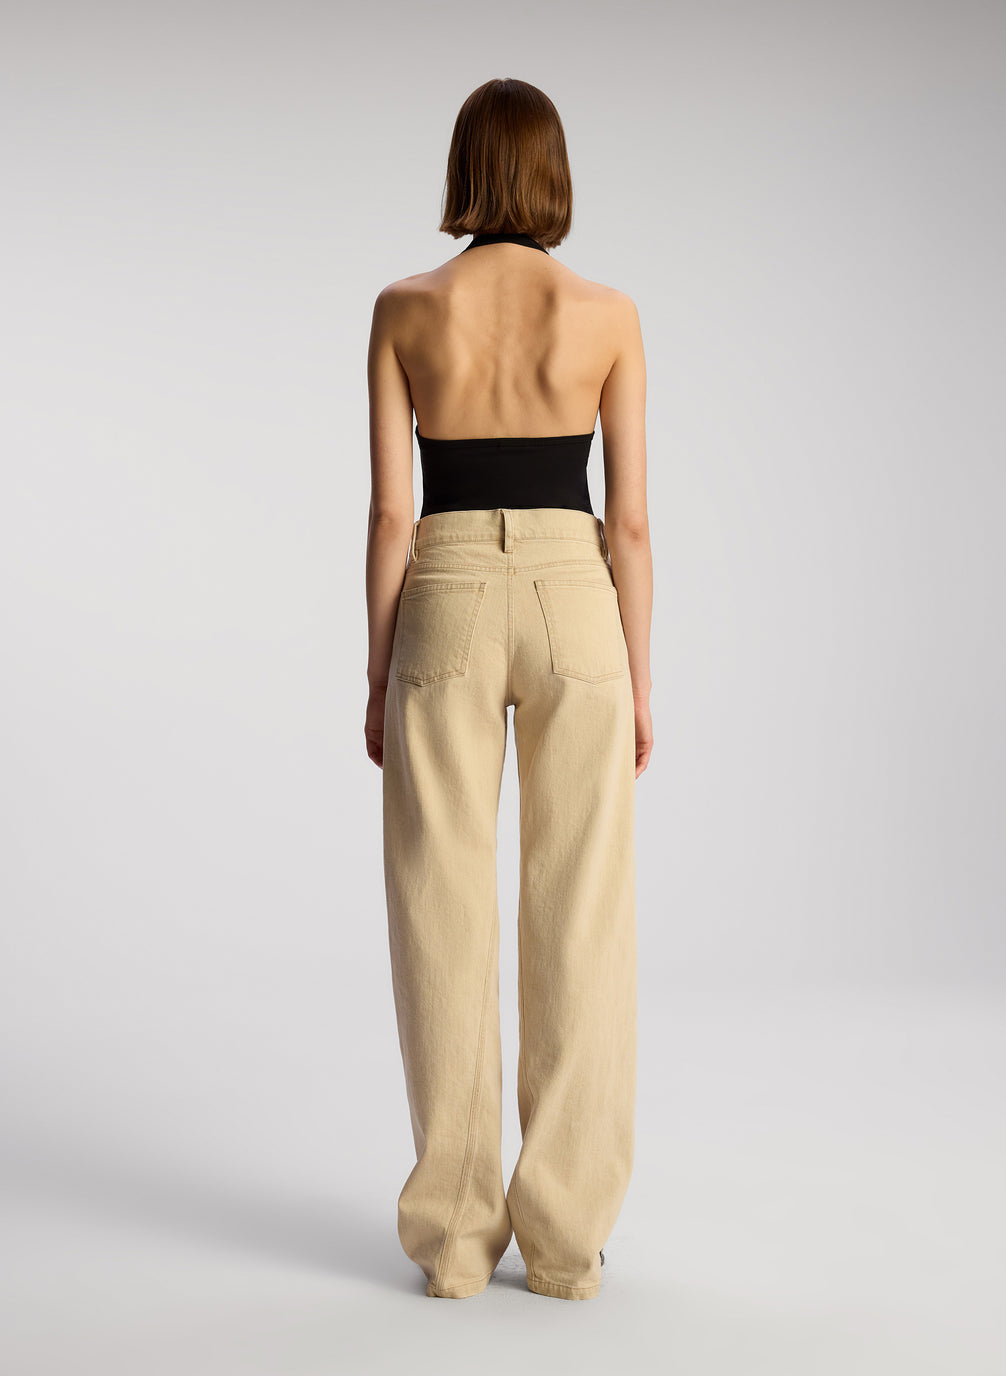 back view of woman wearing black asymmetric tank and tan pants